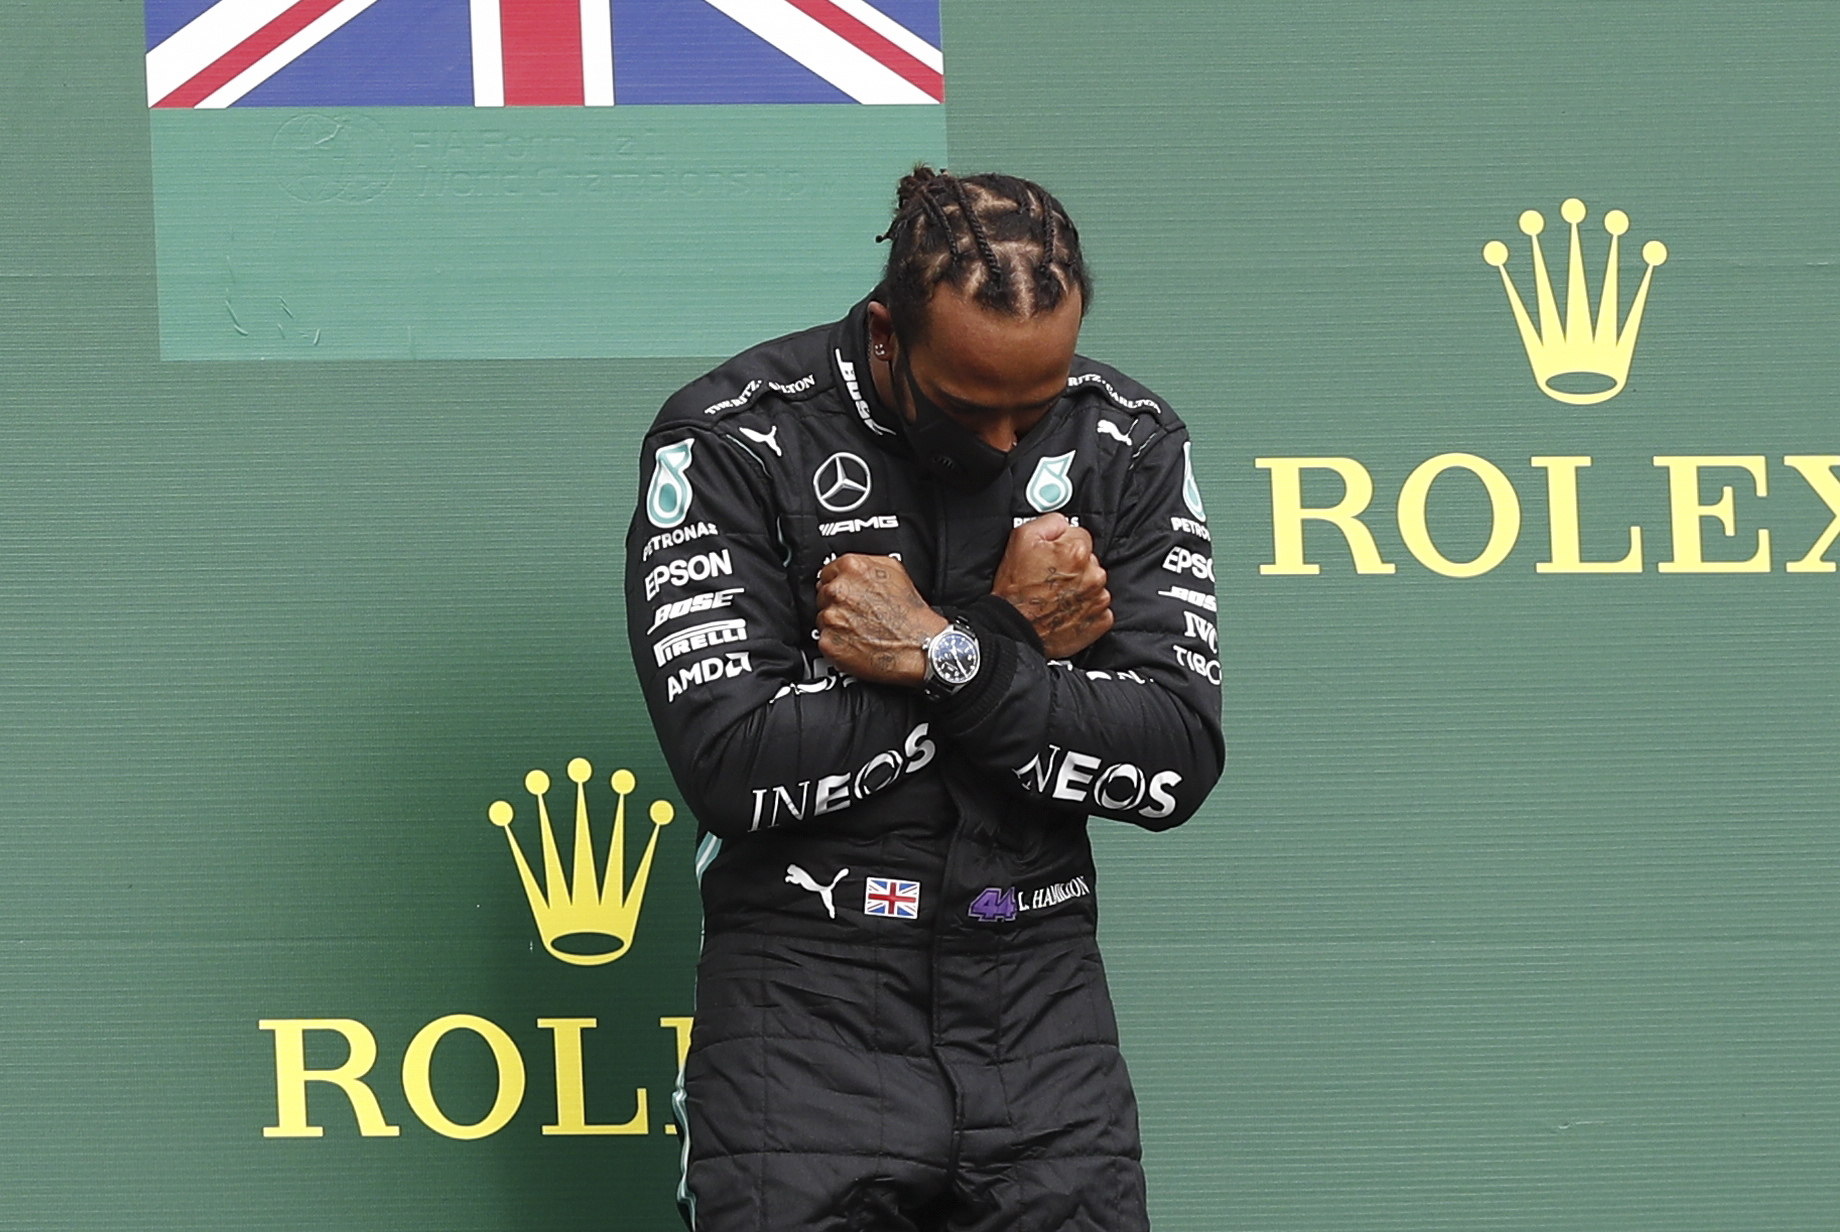 Lewis Hamilton, de Mercedes, festeja  el triunfo en Bélgica, mismo que dedicó al actor Chadwick Boseman. (Foto Prensa Libre: EFE. 